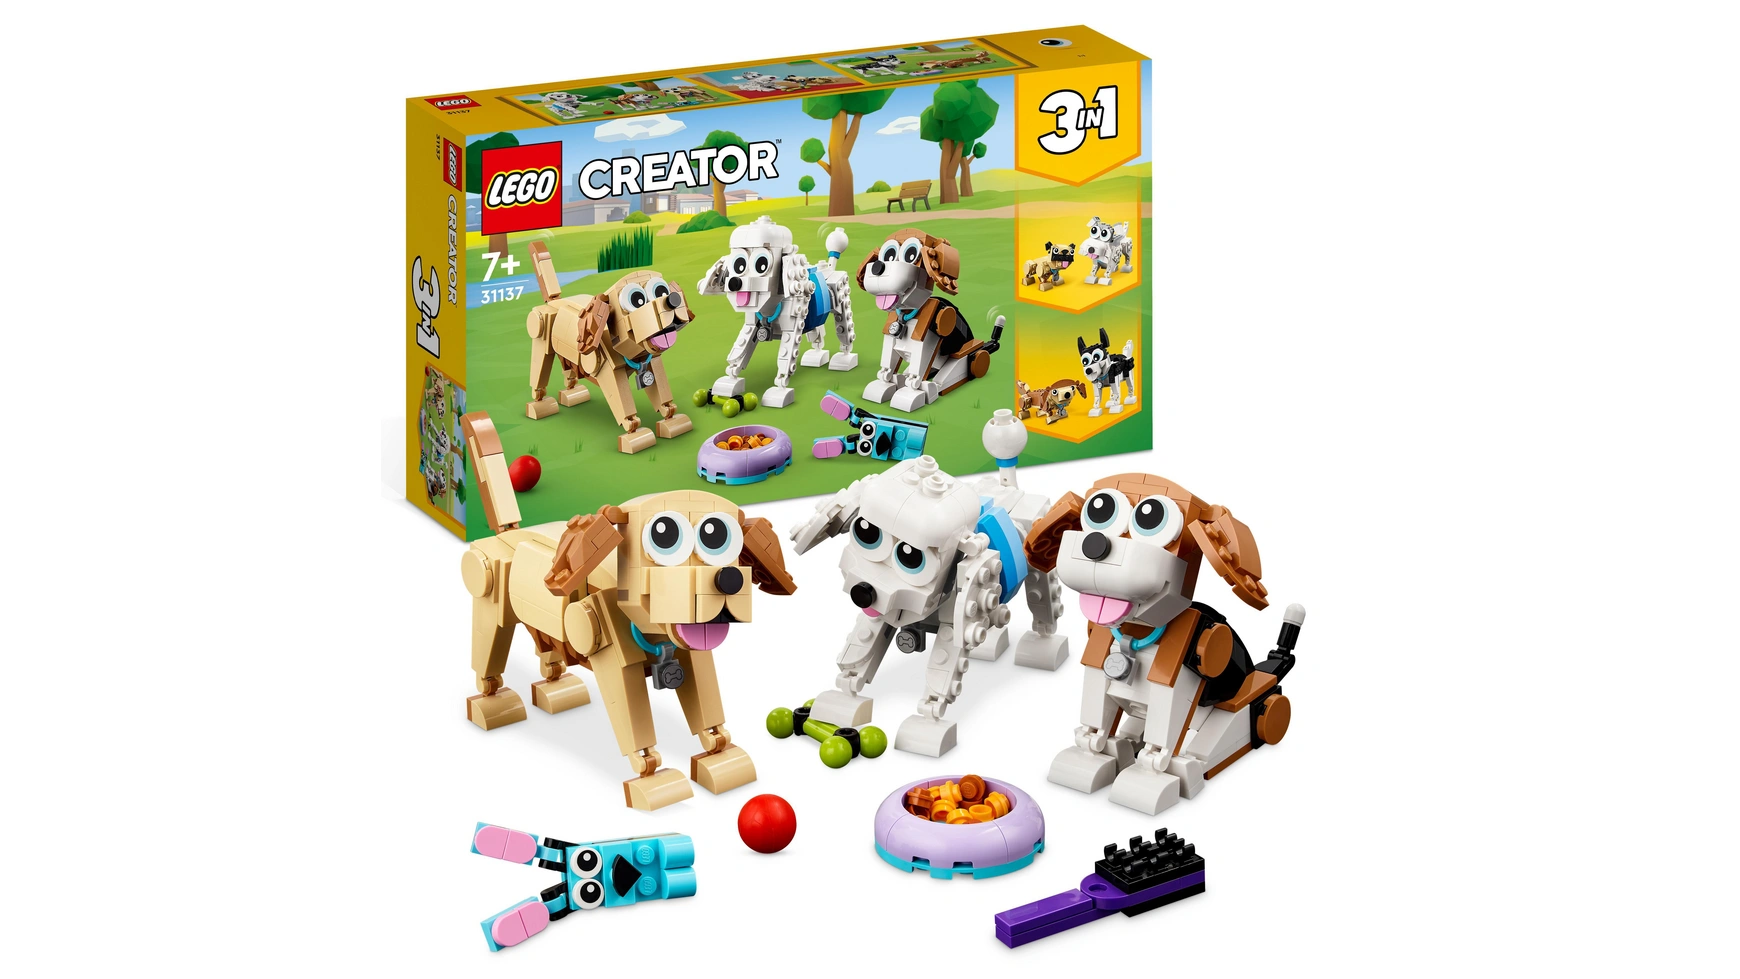 Lego Creator 3in1 Набор игрушек с милыми собаками и животными